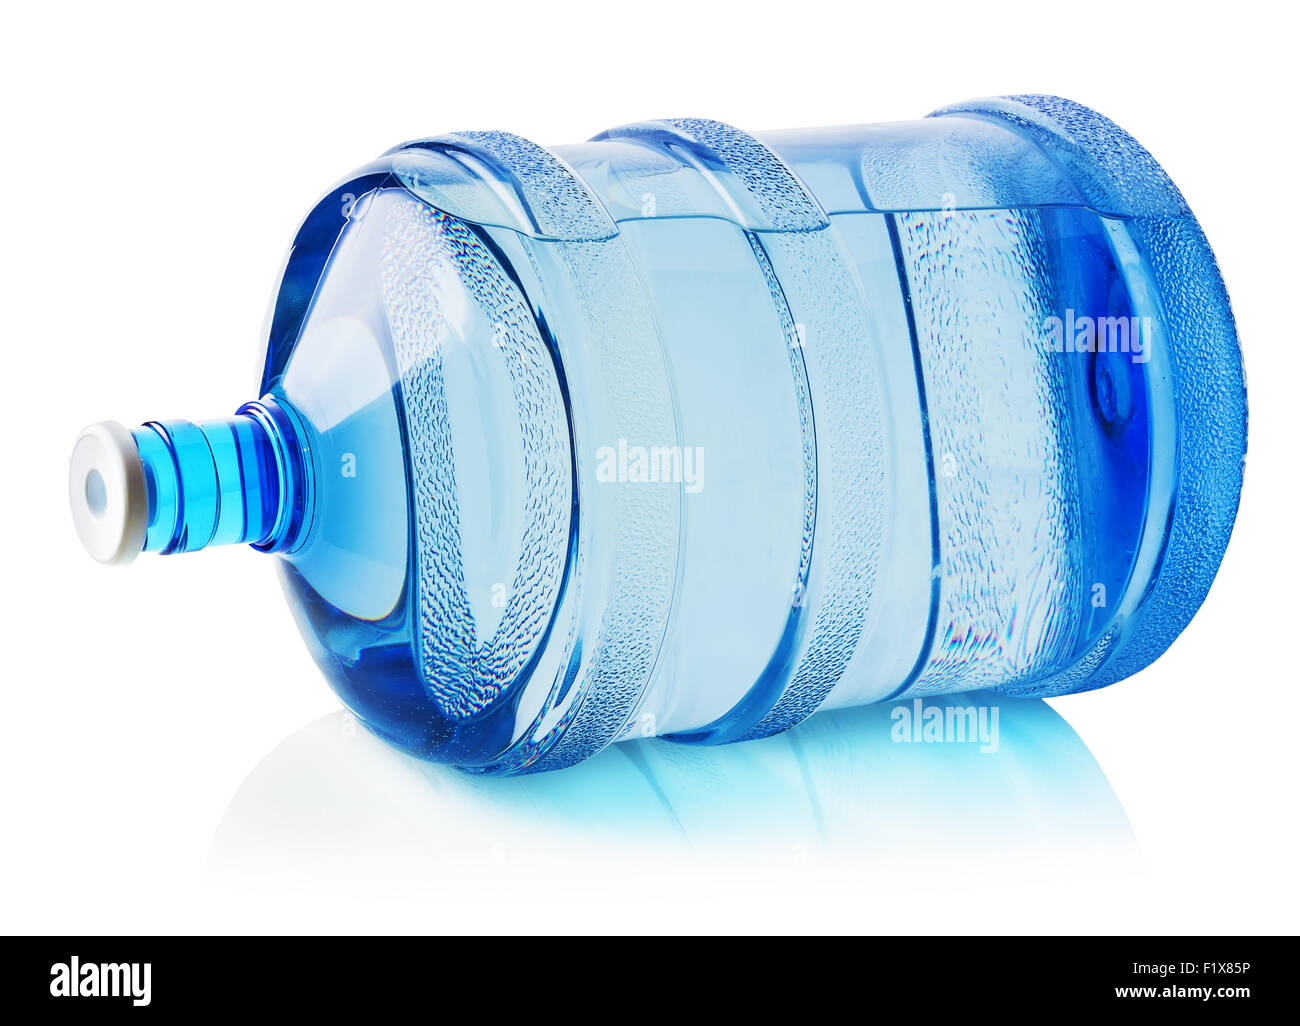 Bottiglia grande di acqua minerale isolato su uno sfondo bianco. Foto Stock